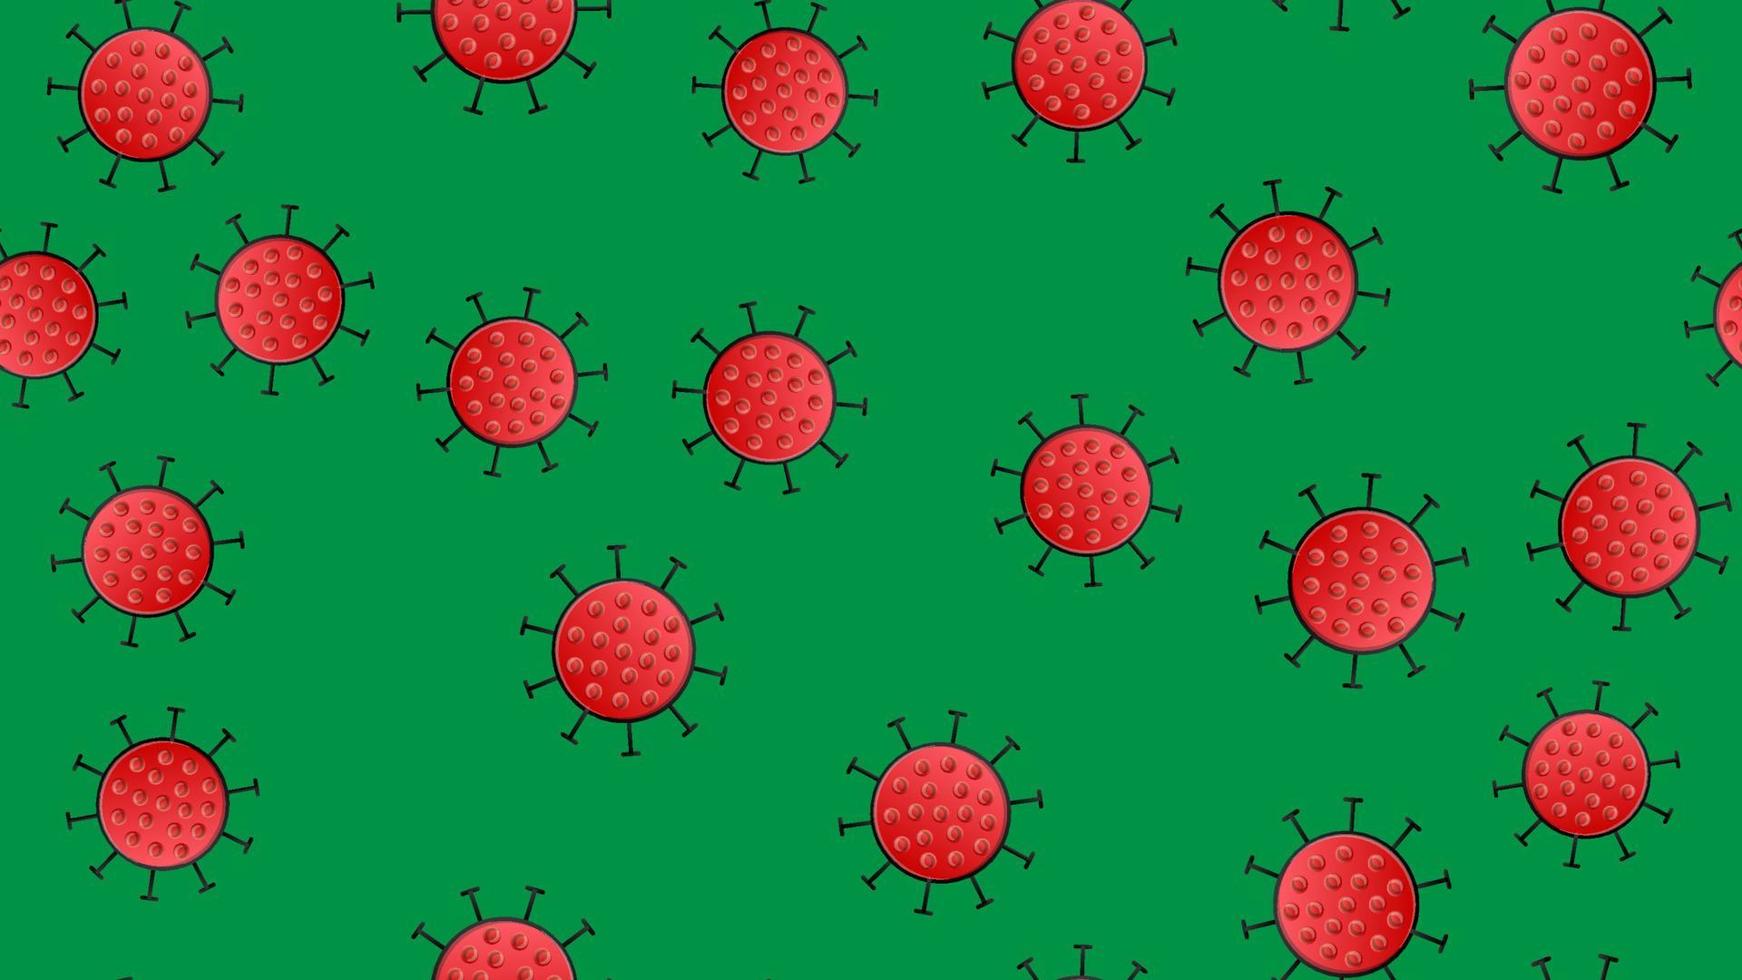 sömlös mönster av röd virus av de bakterie coronavirus sjukdom covid-19 pandemi farlig infektiös textur på en grön bakgrund vektor